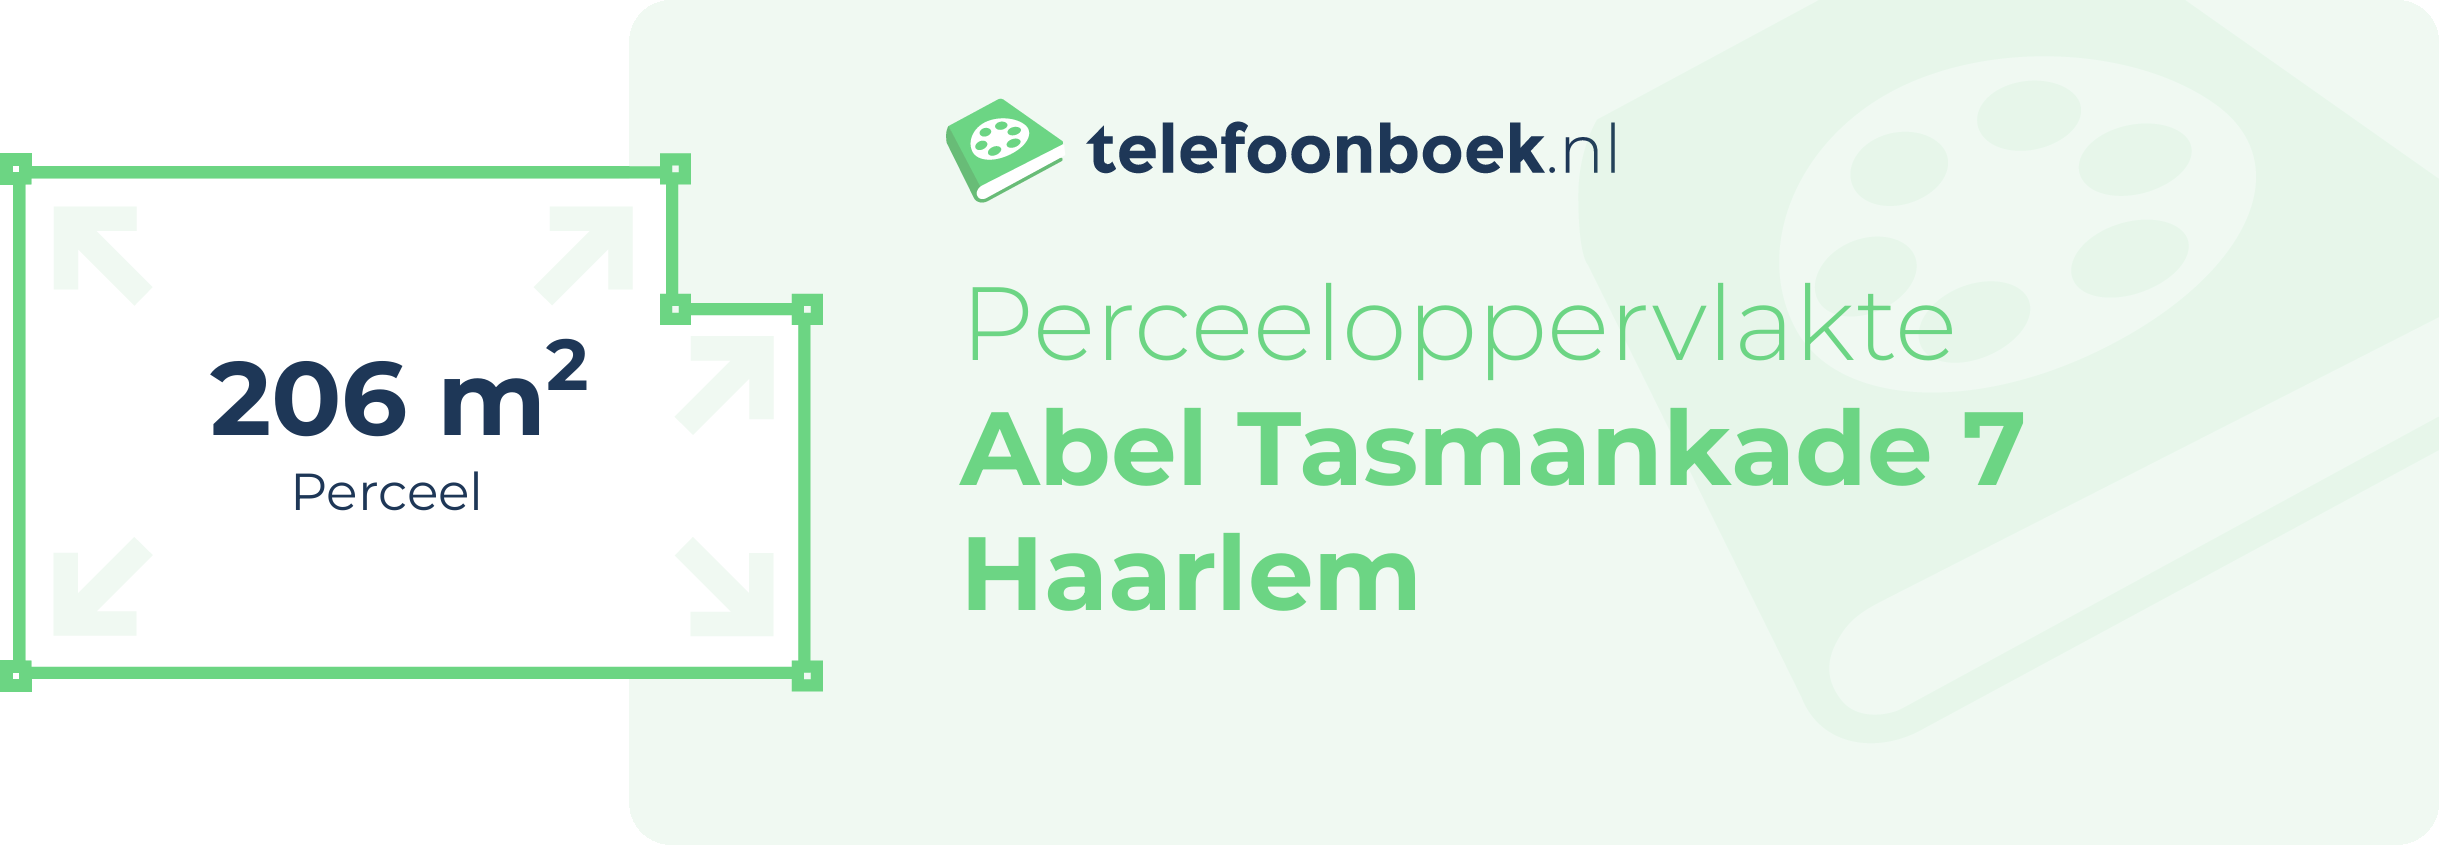 Perceeloppervlakte Abel Tasmankade 7 Haarlem